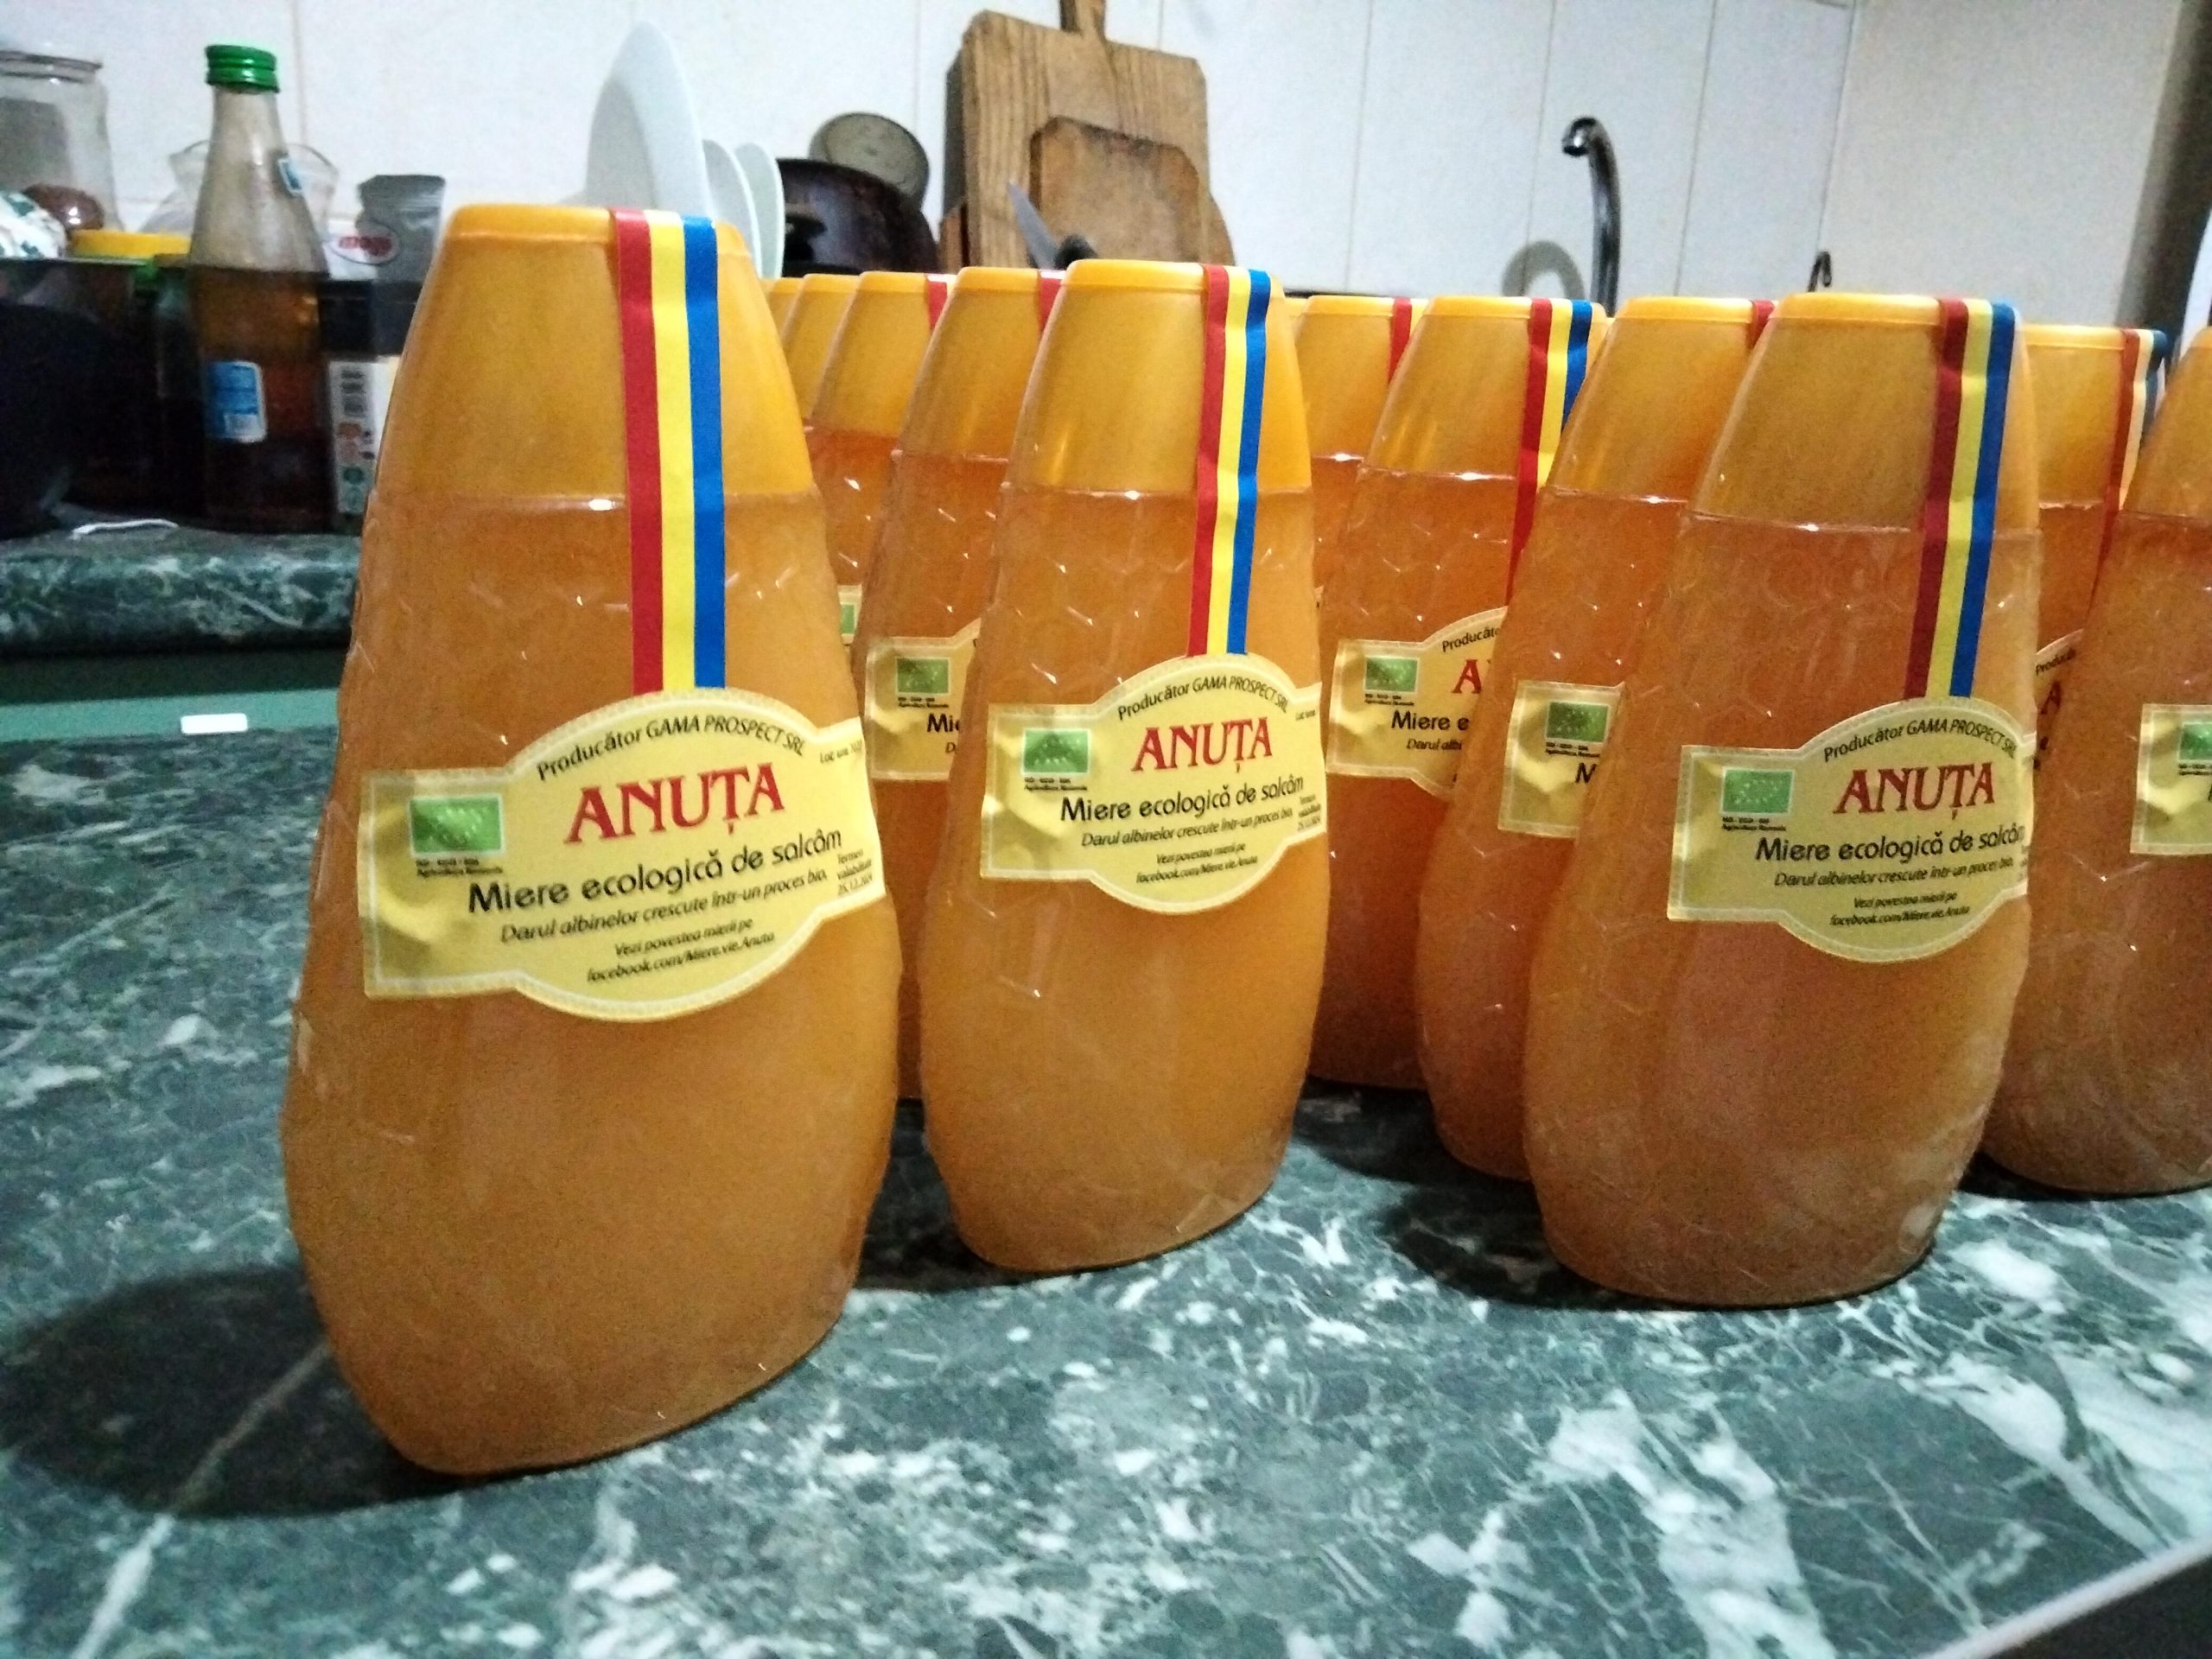 Gama Prospect S.R.L. – Apicultor ecologic, producător de miere ecologică în București